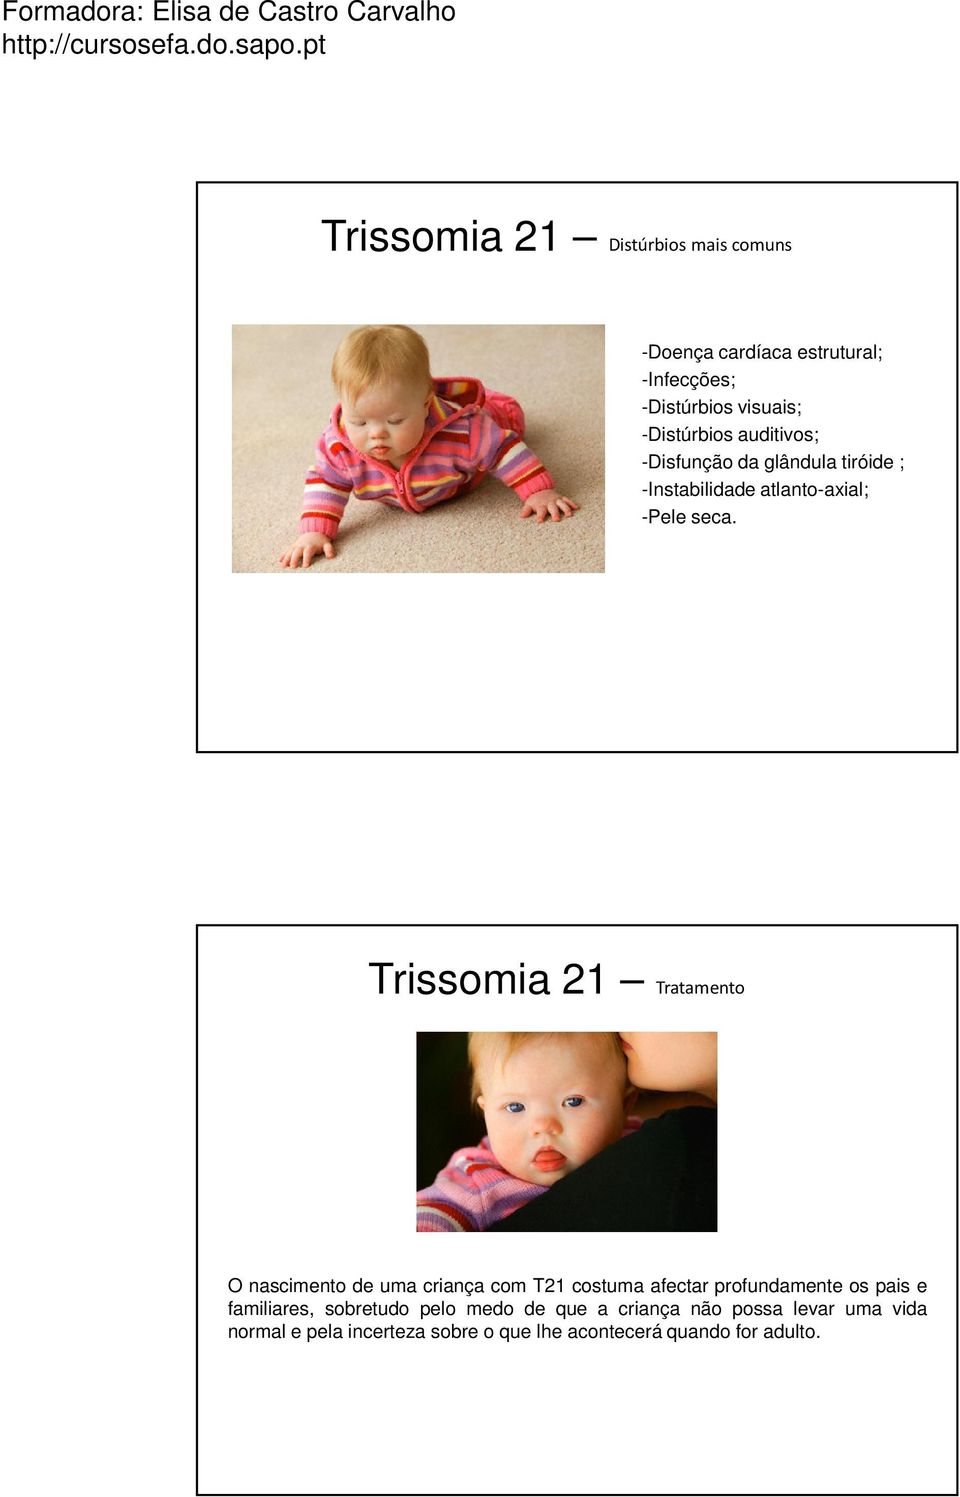 Trissomia 21 Tratamento O nascimento de uma criança com T21 costuma afectar profundamente os pais e